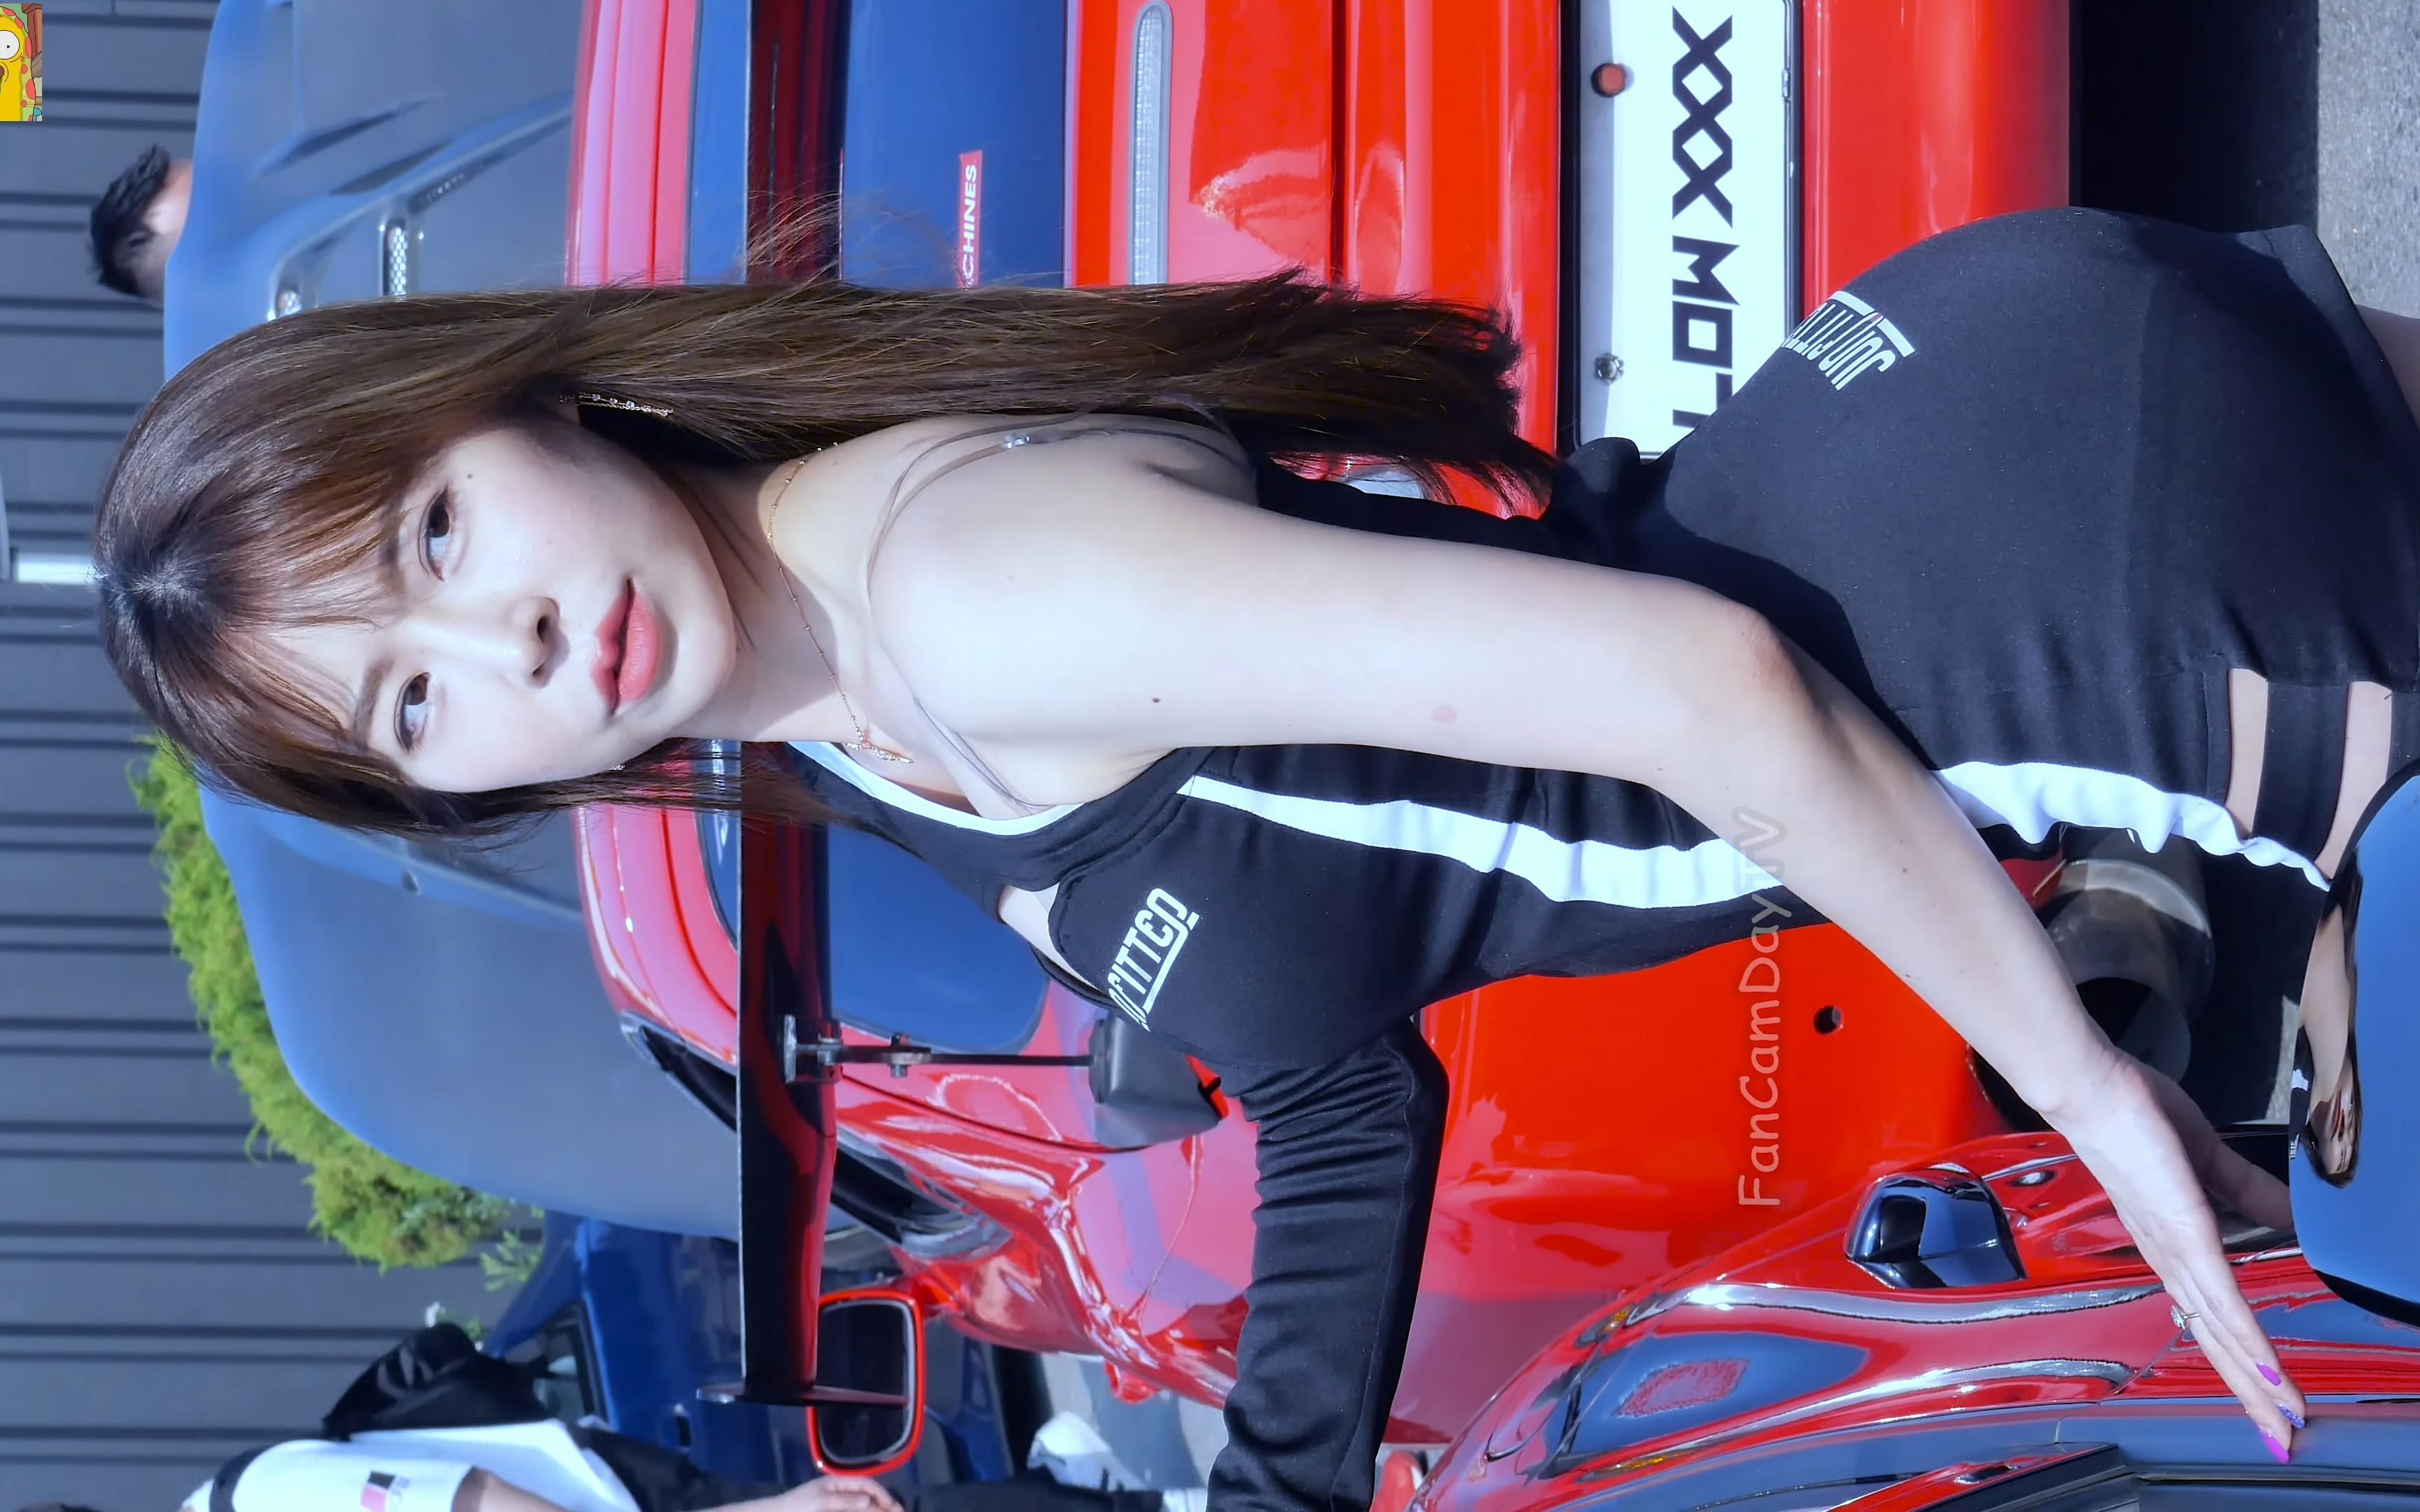 [4k] 韩国车展 美女车模性感展示